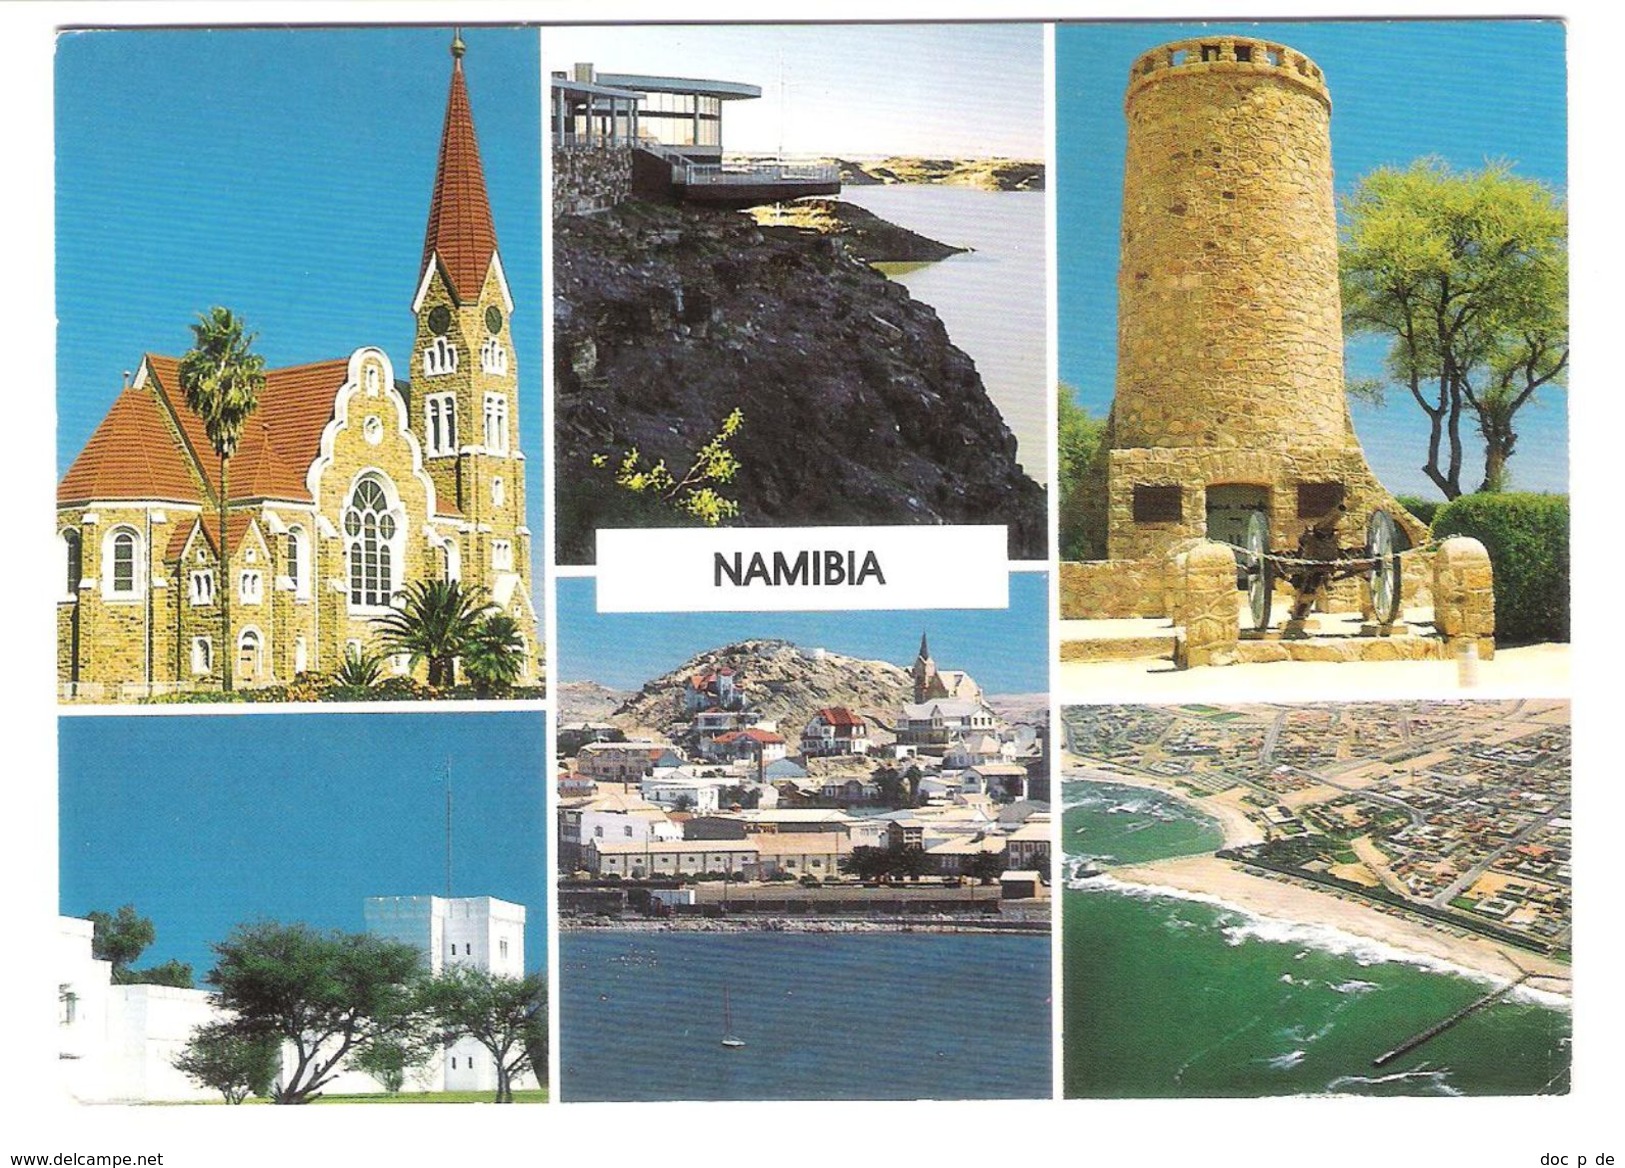 Namibia - Views - German Lutheran Church - Namibië